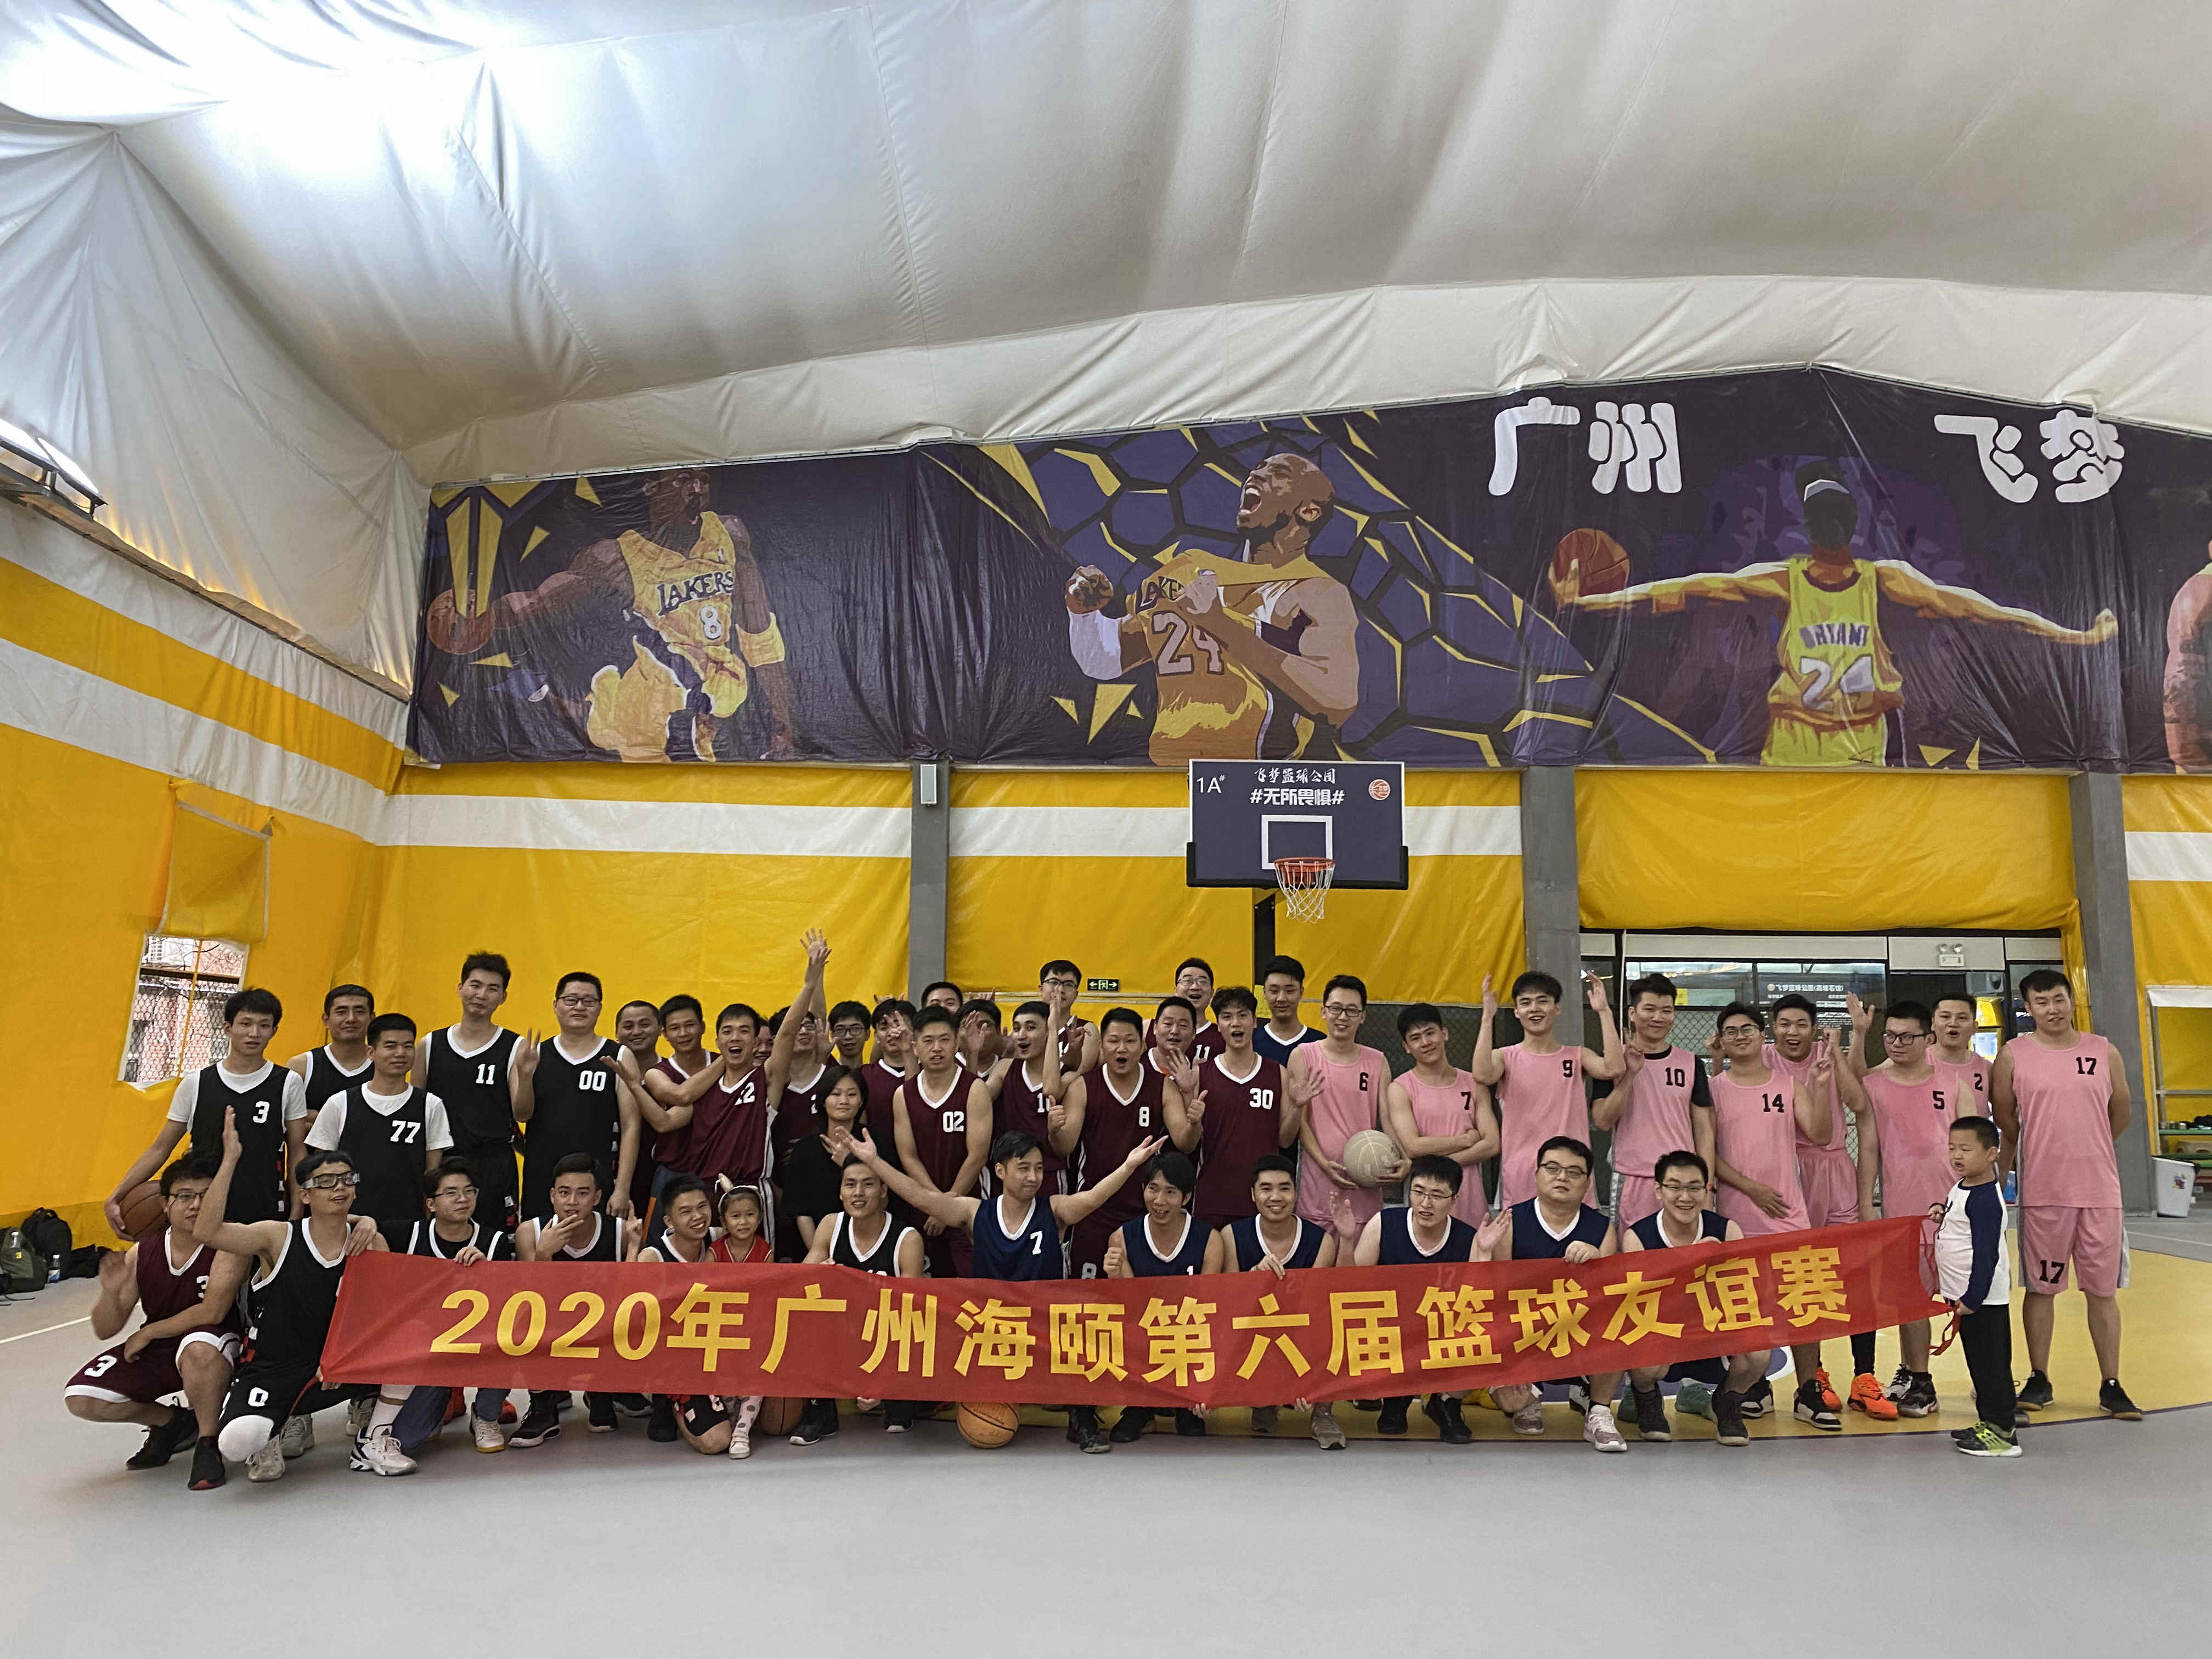 凝心聚力 展现风采 ——记广州海颐第六届职工篮球友谊赛